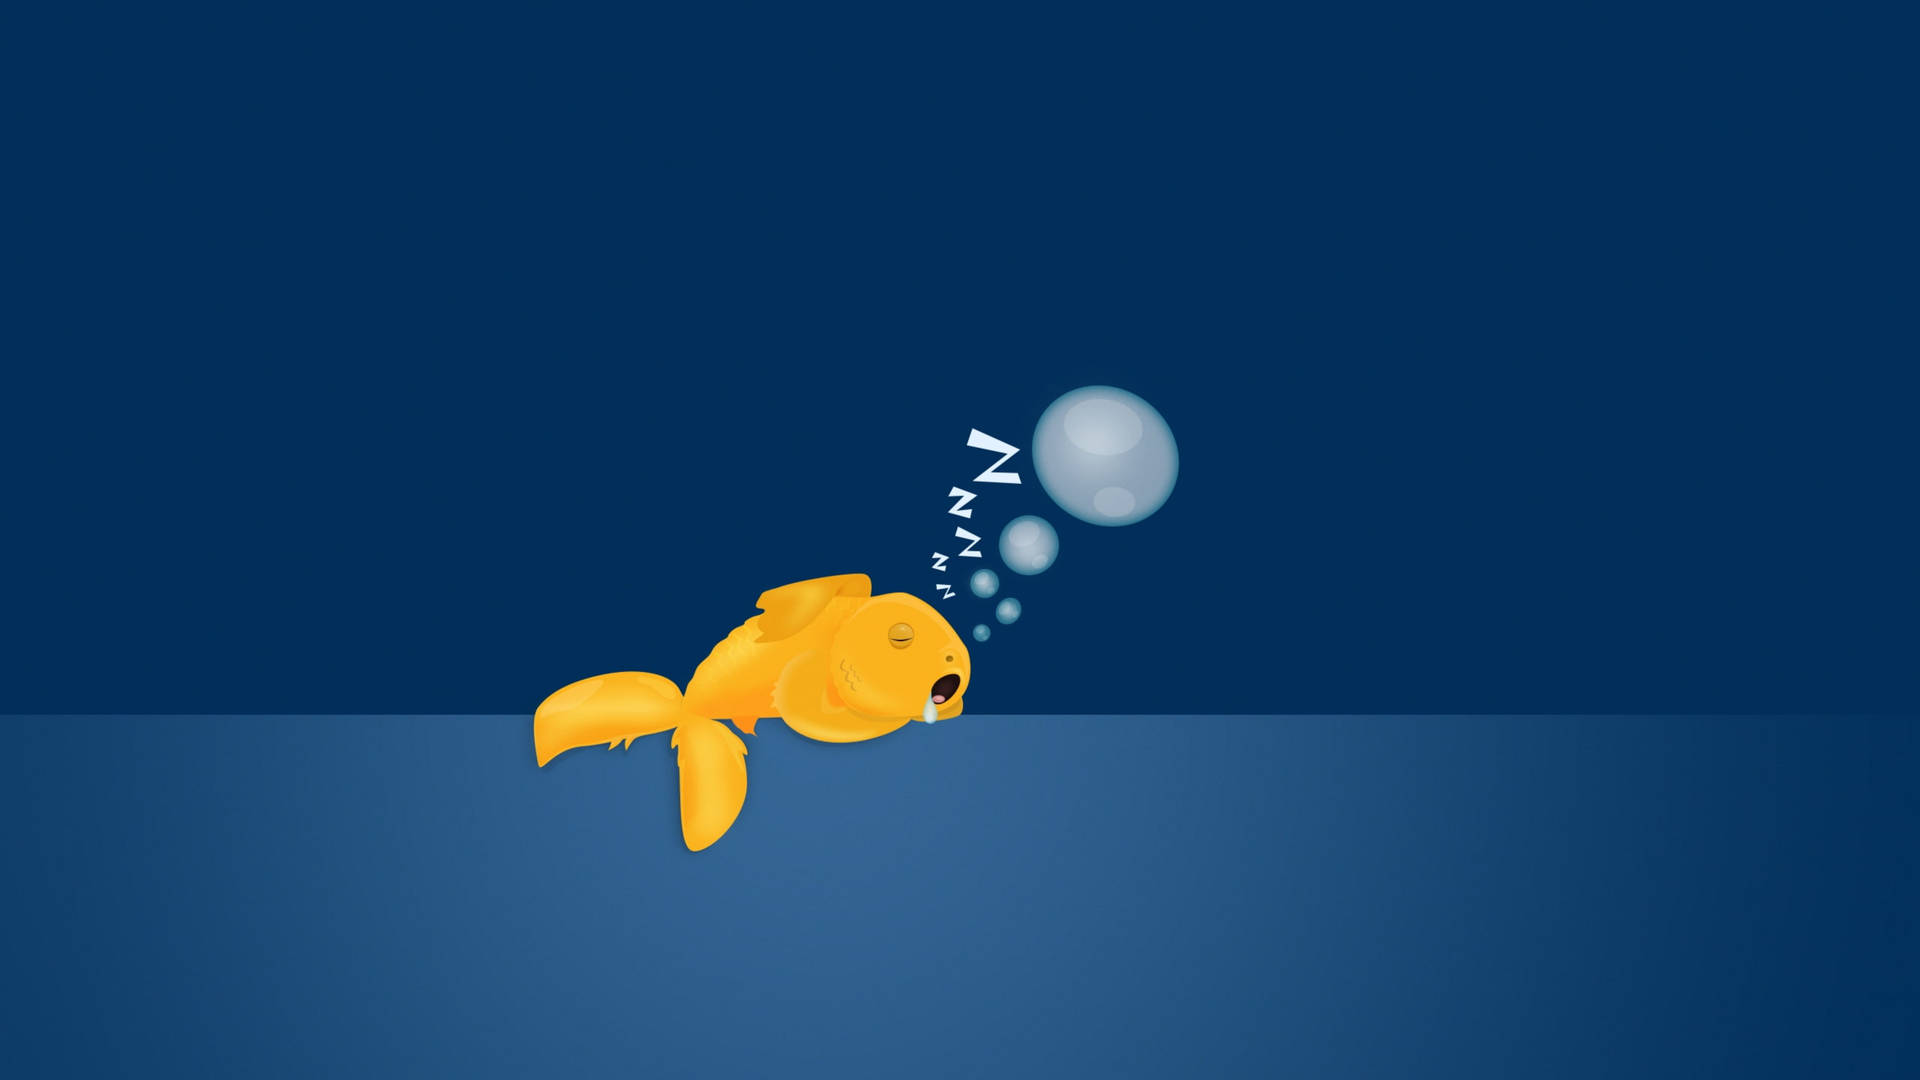 Adorable Sleeping Goldfish Art Background